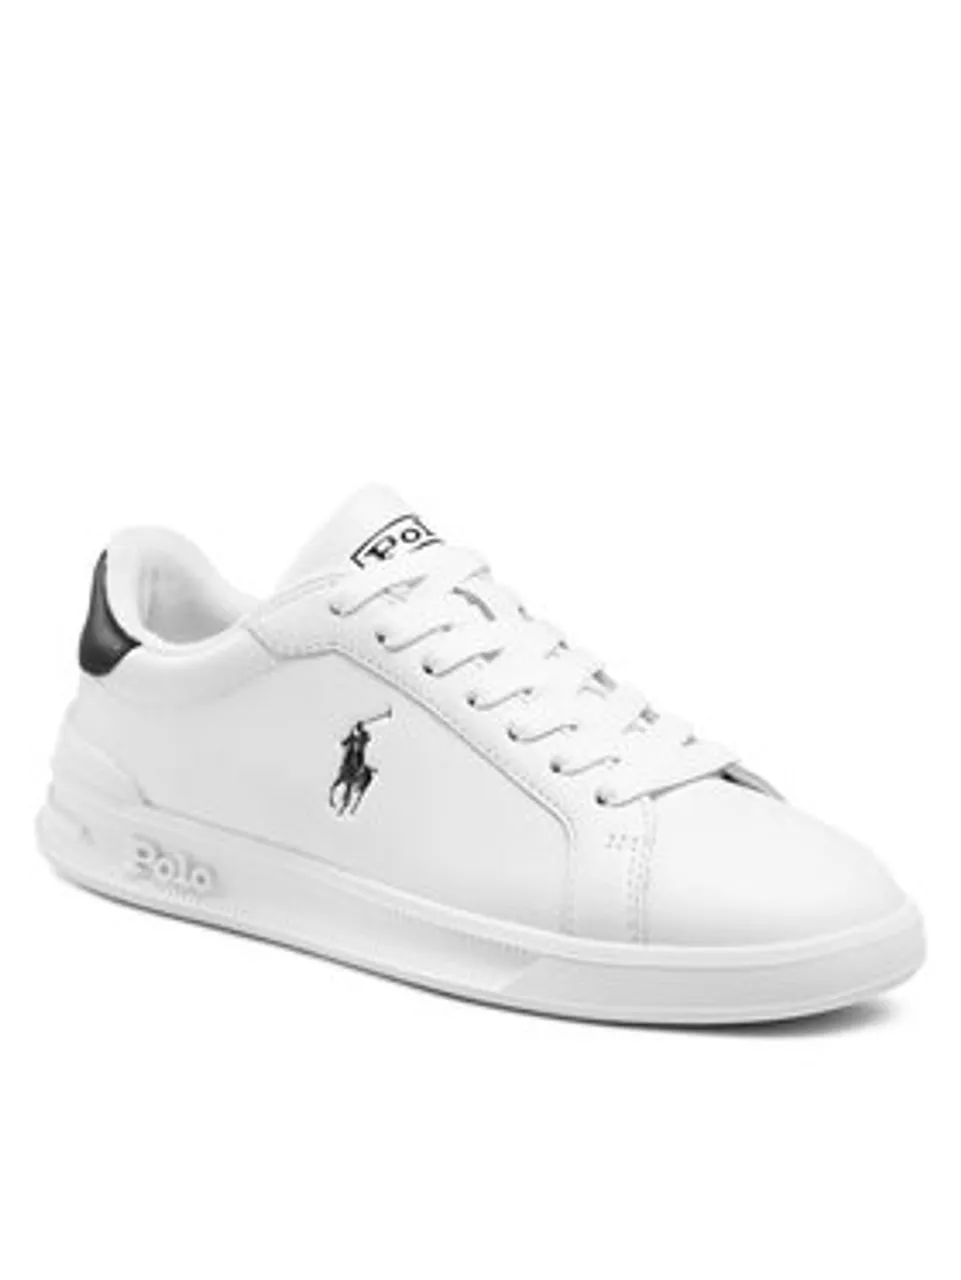 Polo Ralph Lauren Sneakers Hrt Ct II 809829824005 Weiß